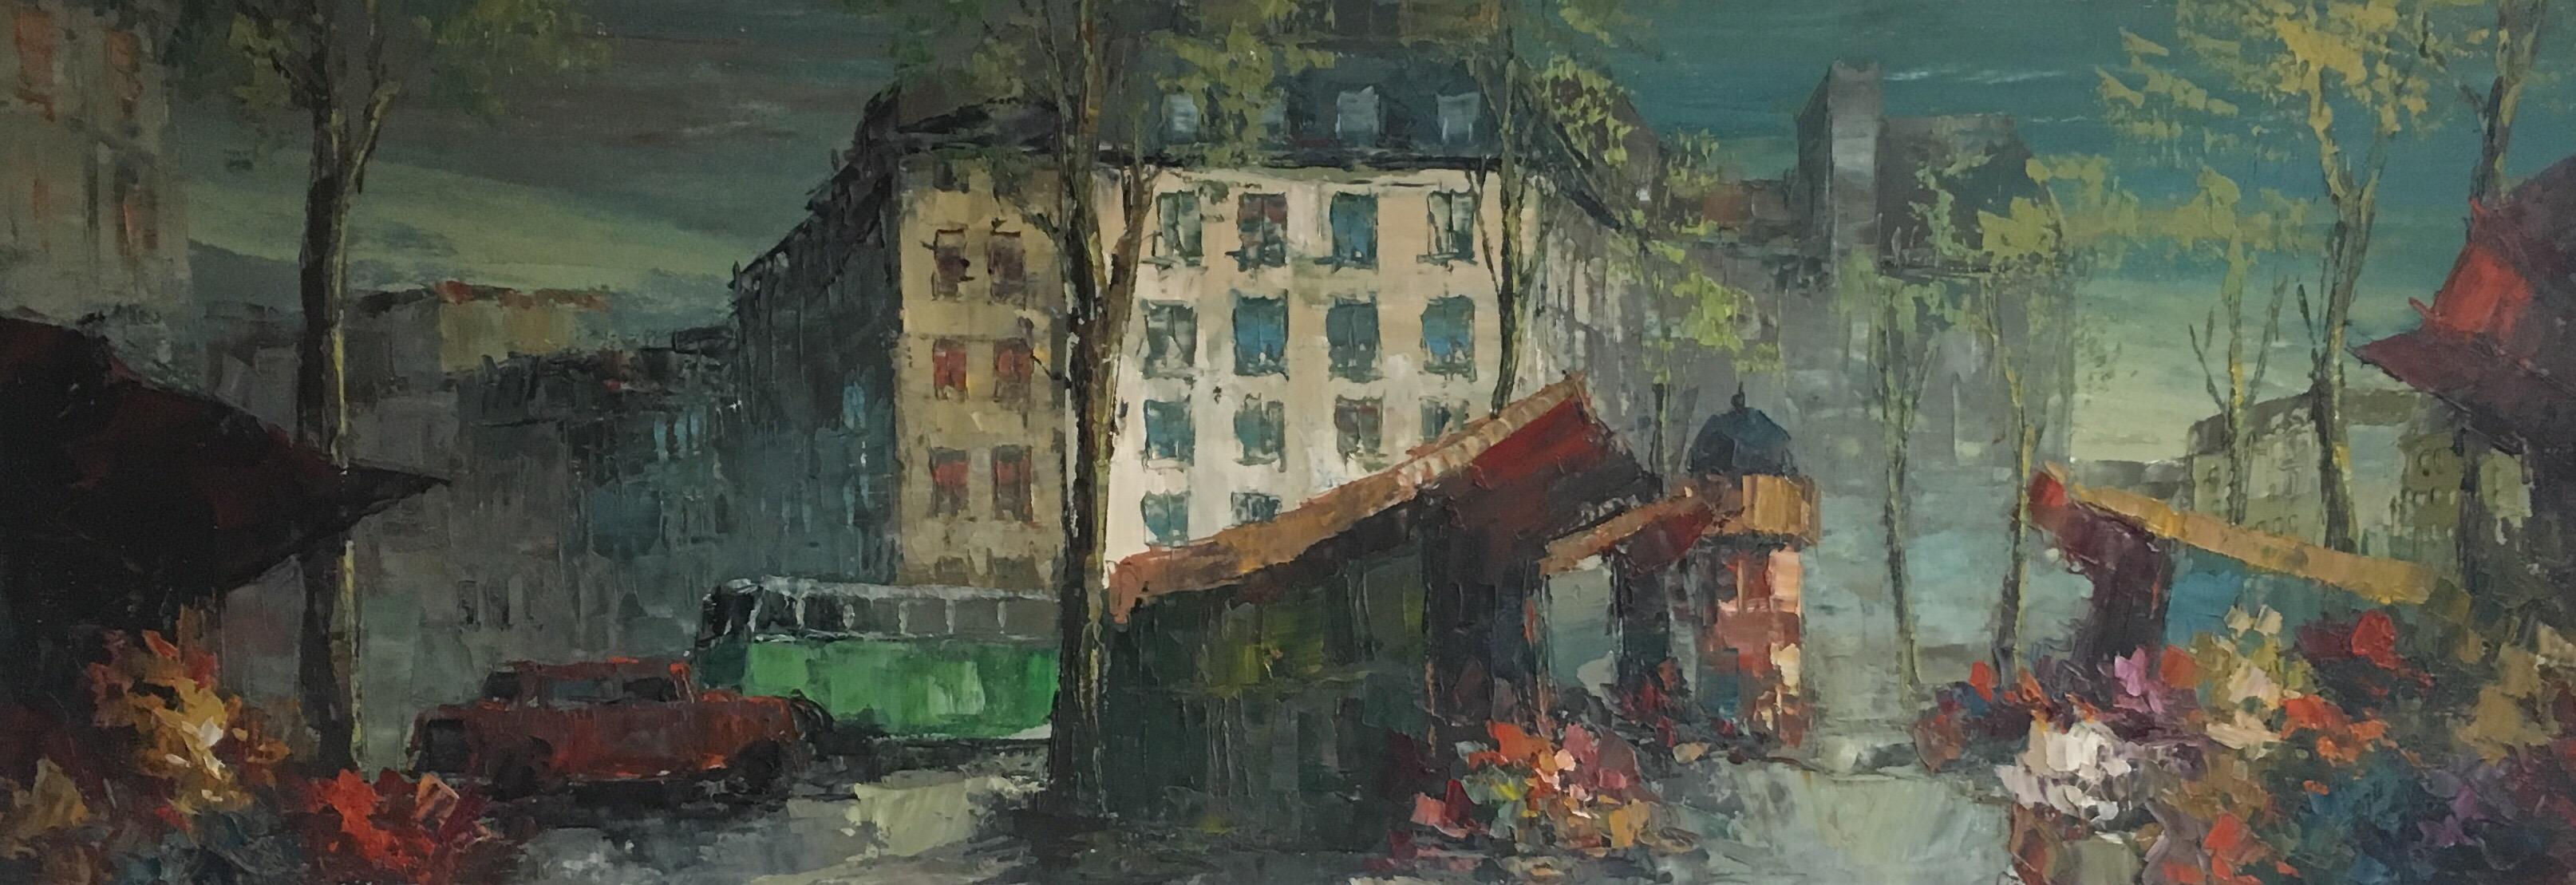 Parisian Flower Market, Large Impressionist Landscape, Oil Painting